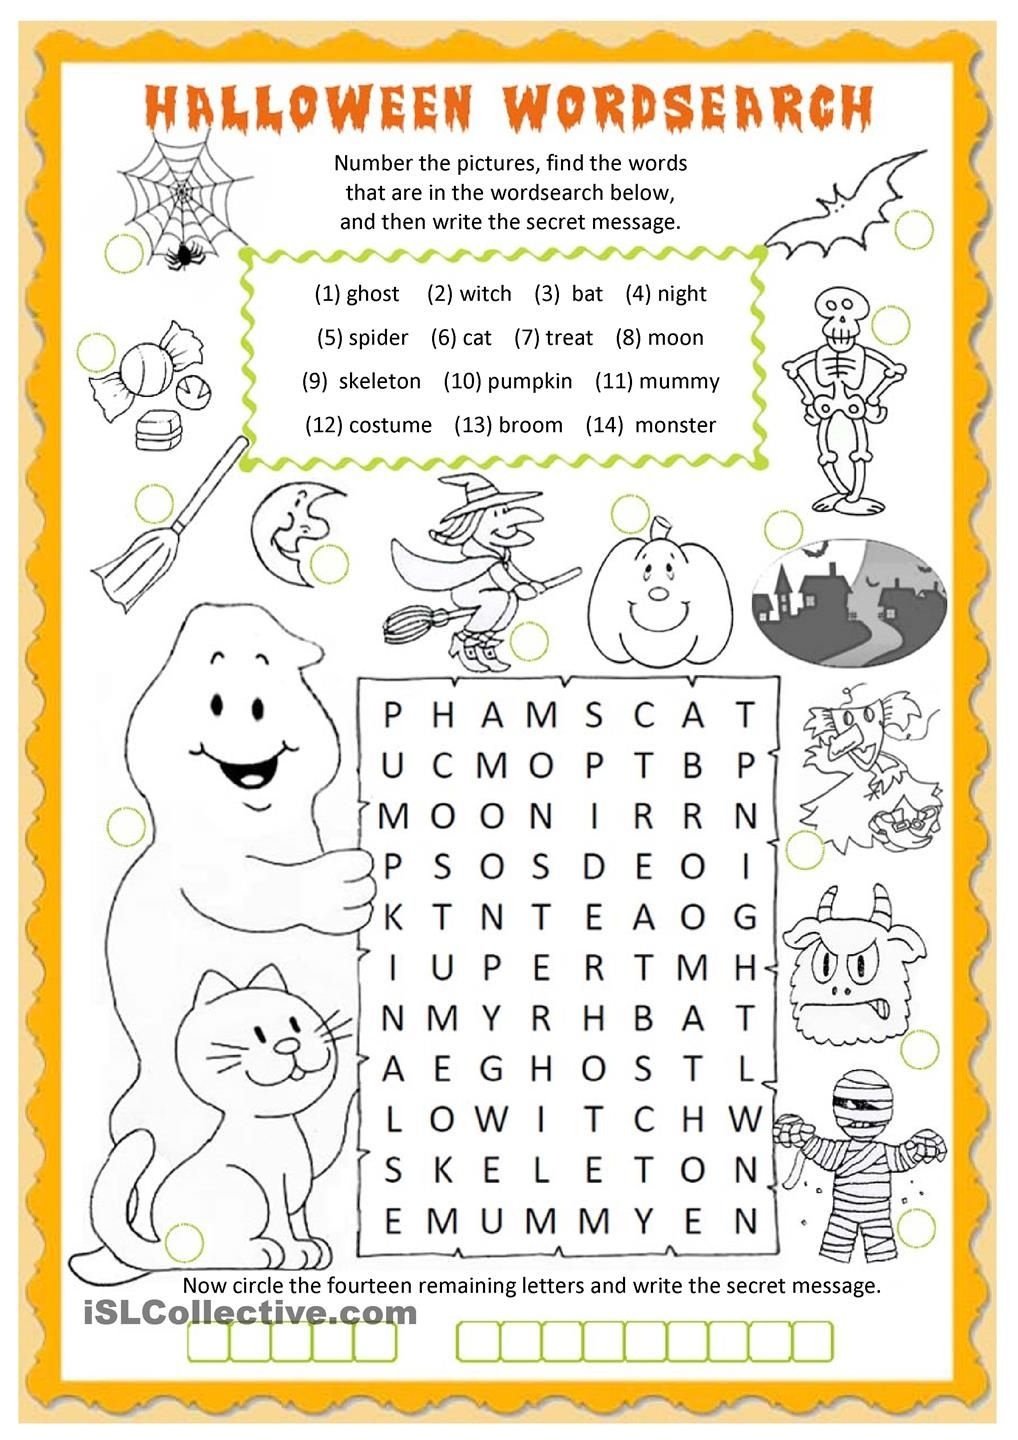 Halloween Wordsearch Worksheet - Free Esl Printable Worksheets Made - Free Printable French Halloween Worksheets